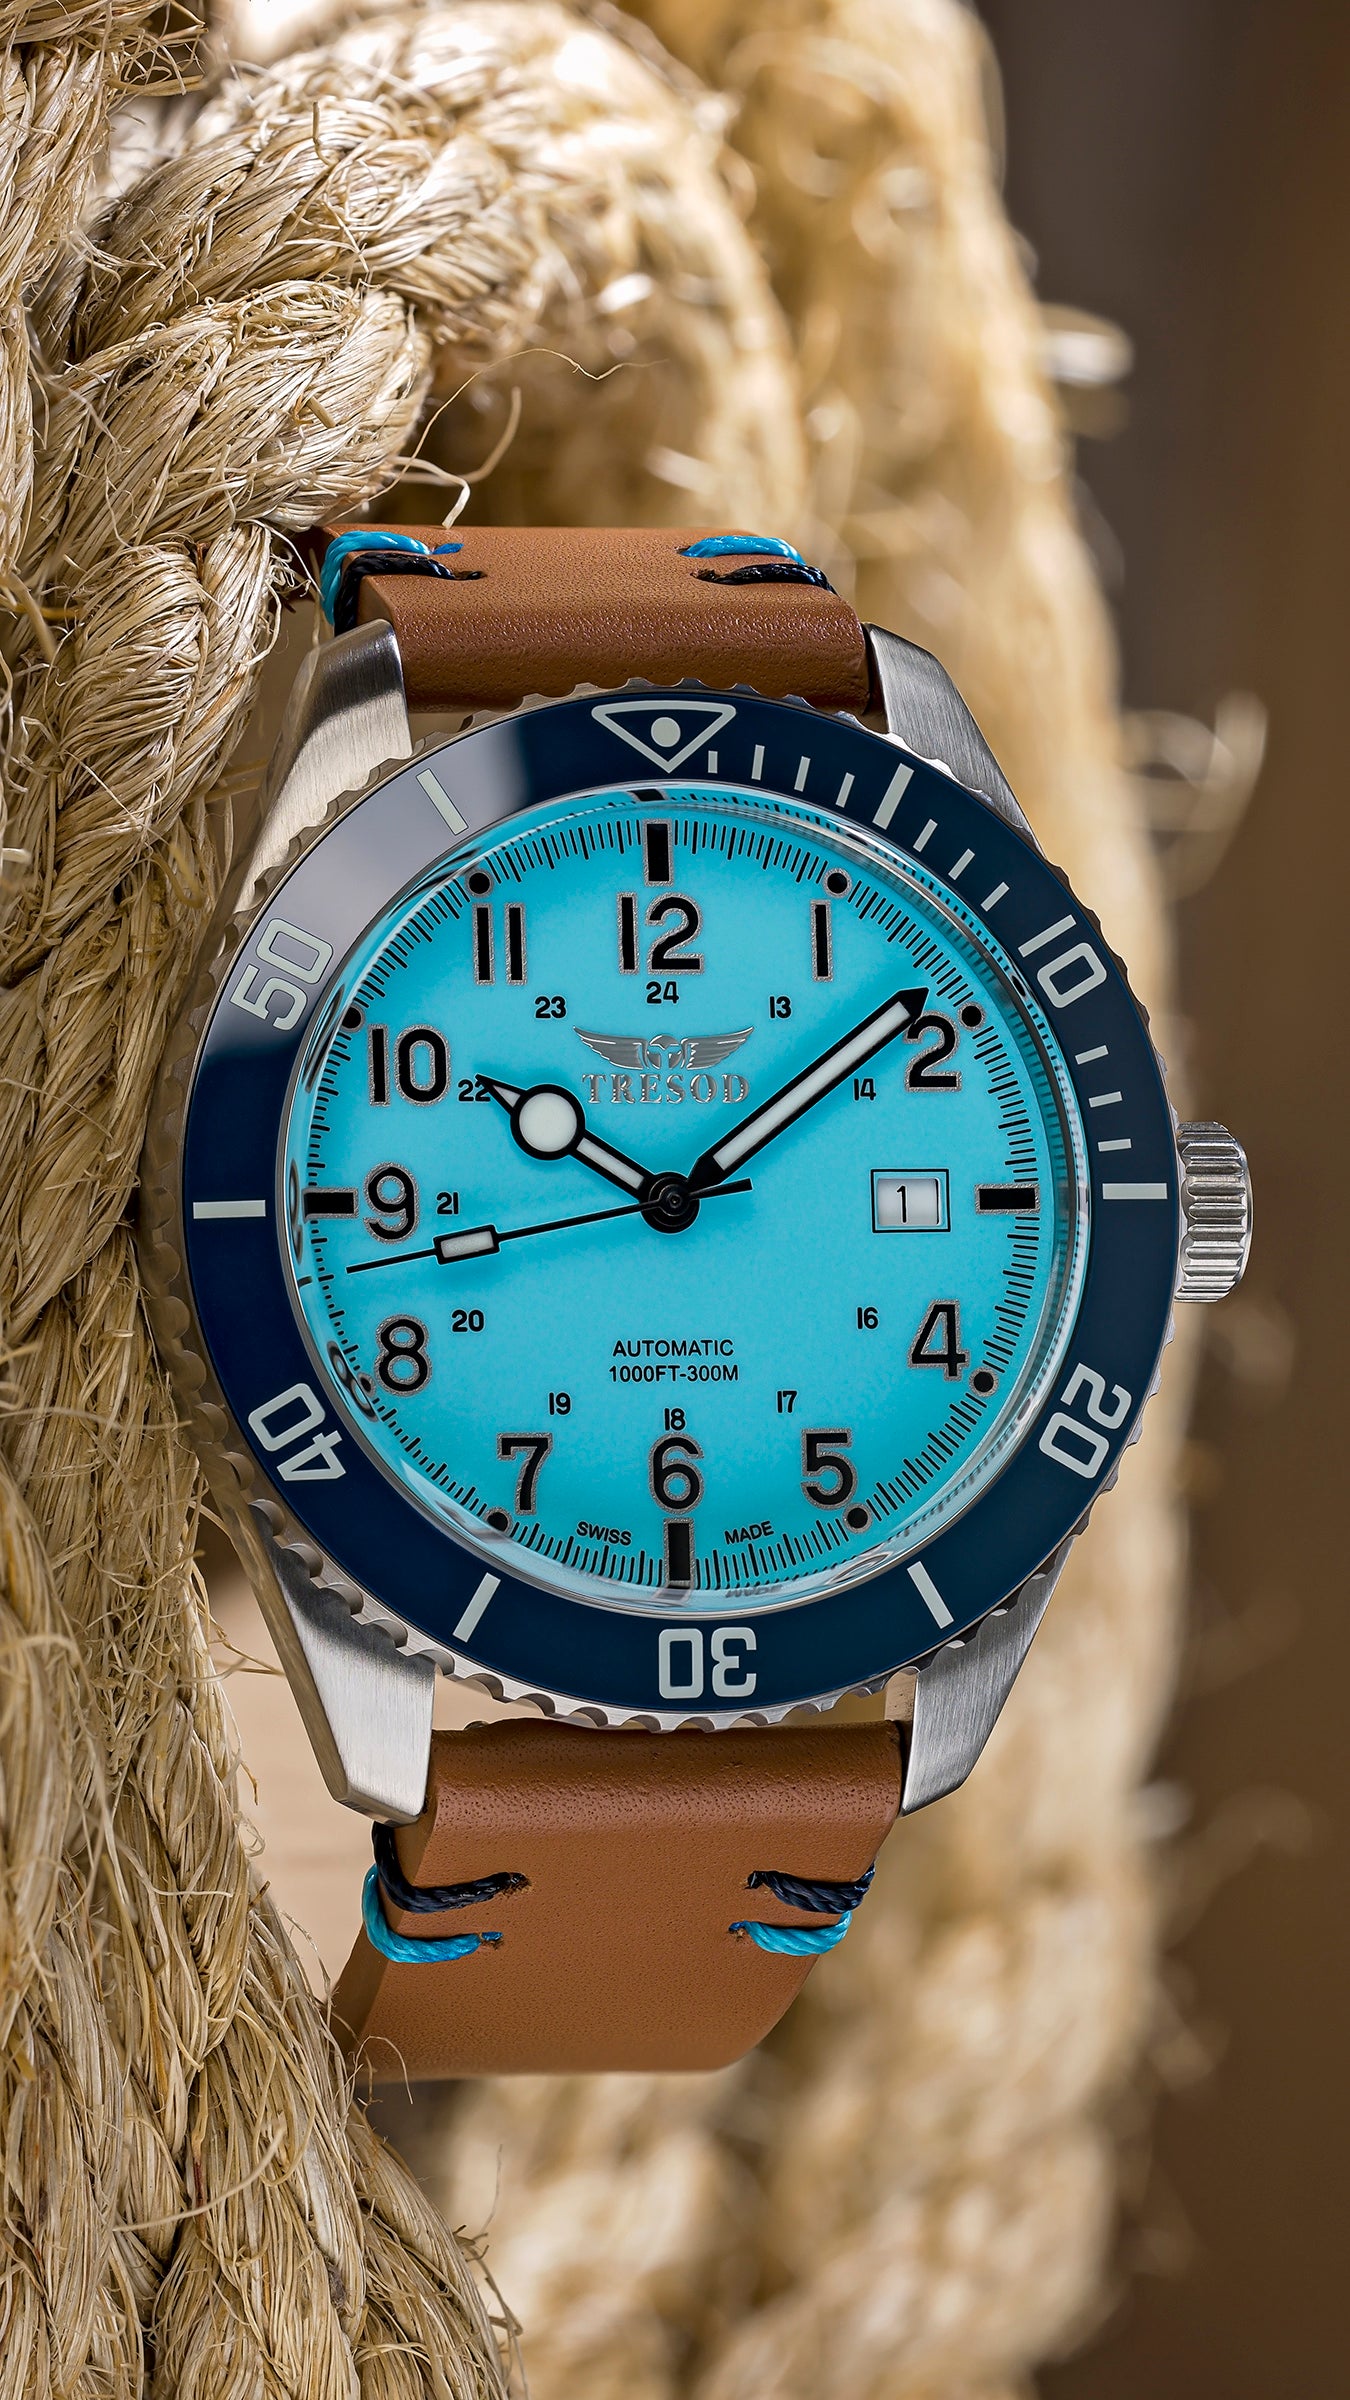 Swiss made watch Men Watches blue